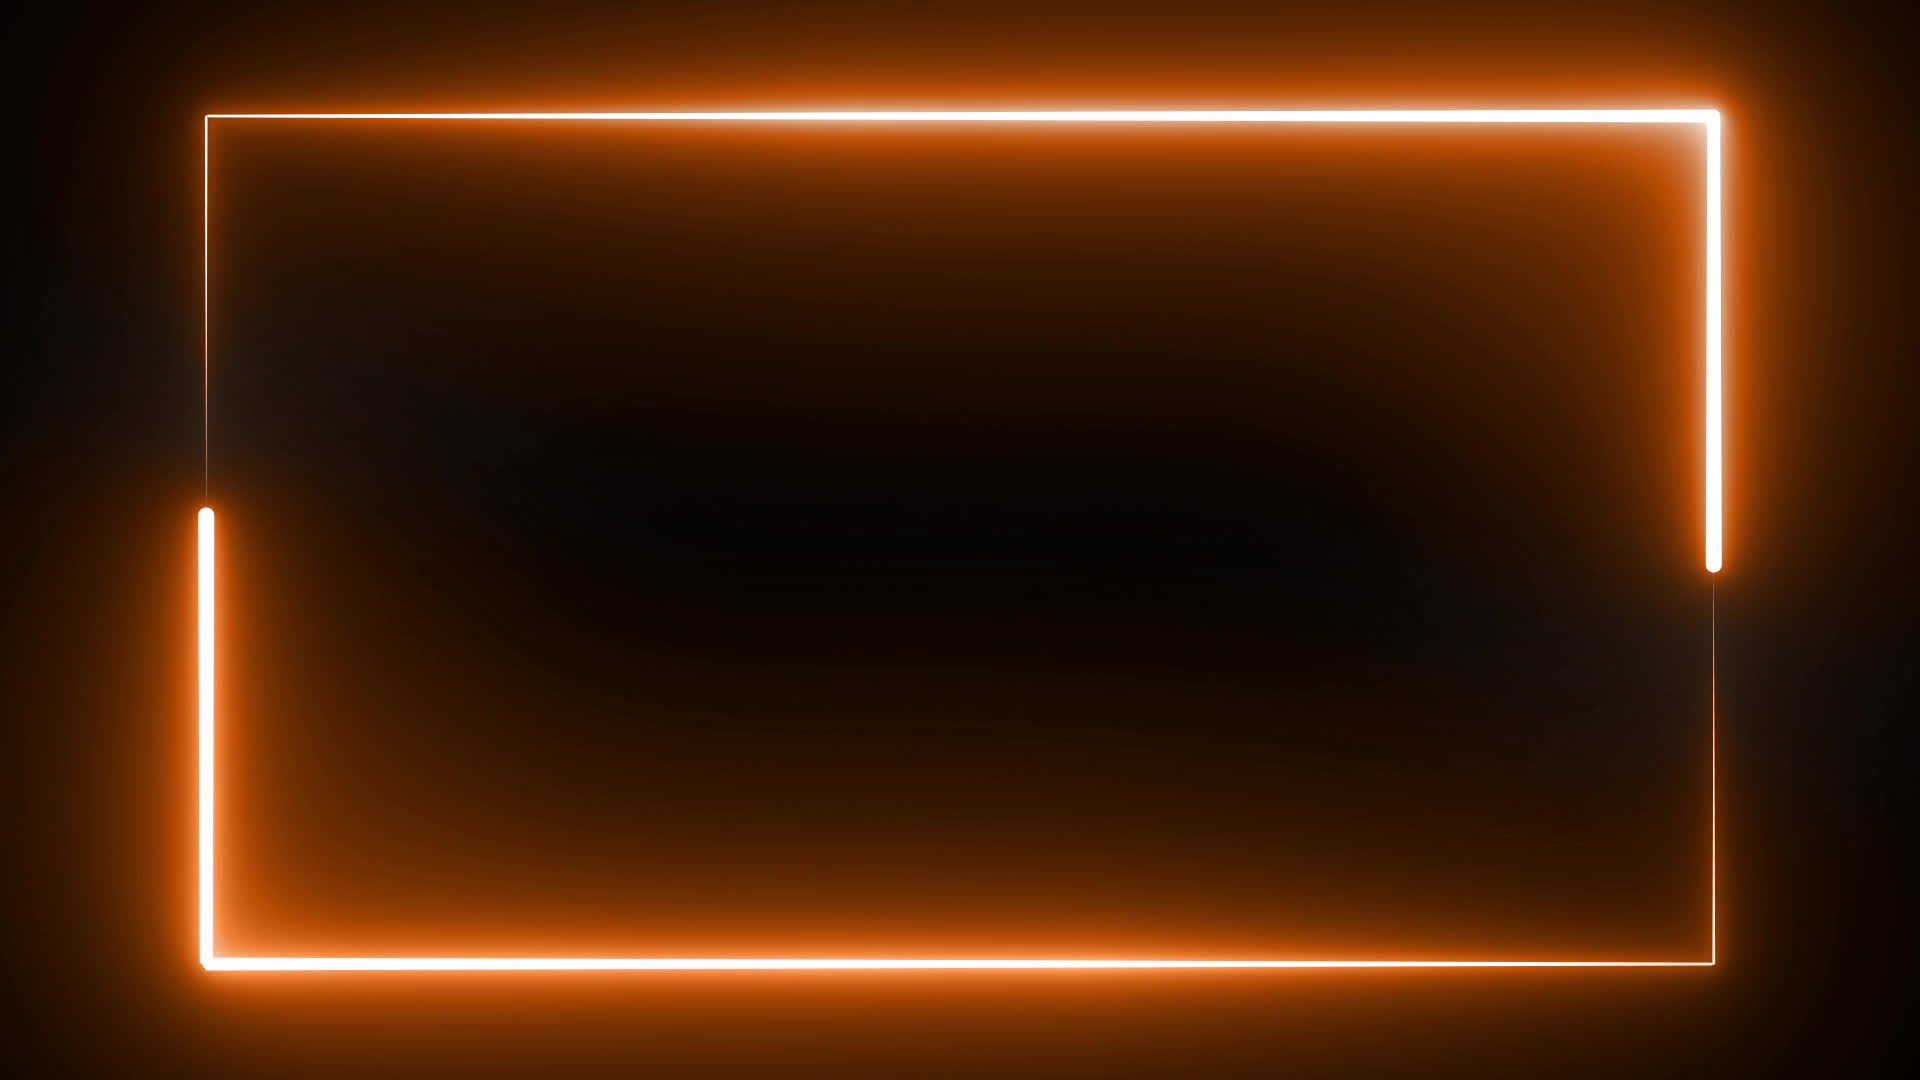 Khung đèn neon màu cam: Hình ảnh khung đèn neon màu cam sẽ mang đến cho bạn sự kết hợp tinh tế giữa ánh sáng và màu sắc. Đây là một sự khéo léo để kết hợp ánh sáng và màu sắc, đem lại một hiệu ứng tuyệt vời cho không gian của bạn.